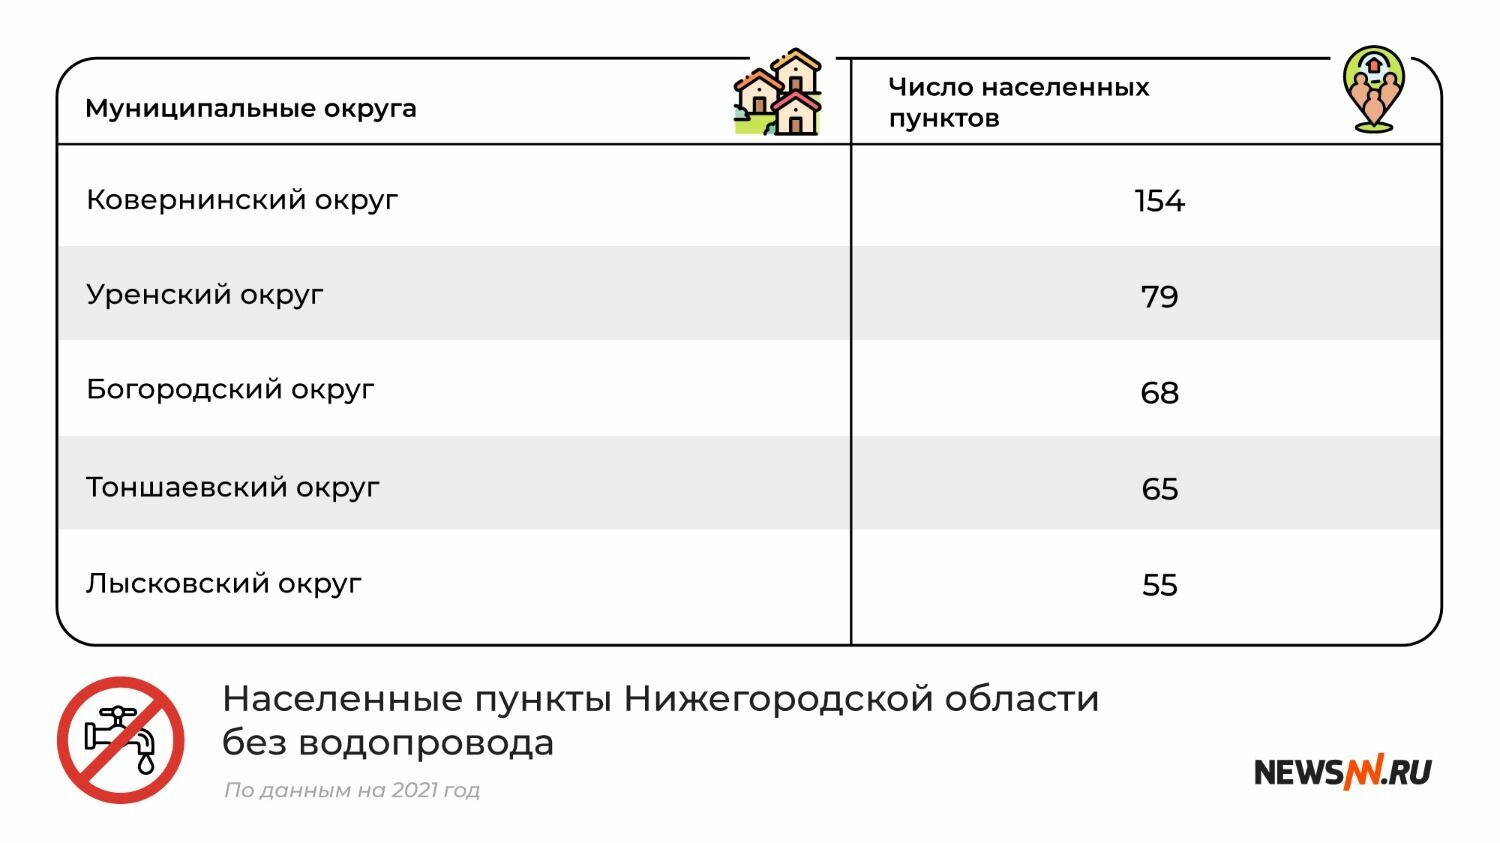 Муниципальные округа Нижегородской области без водопровода